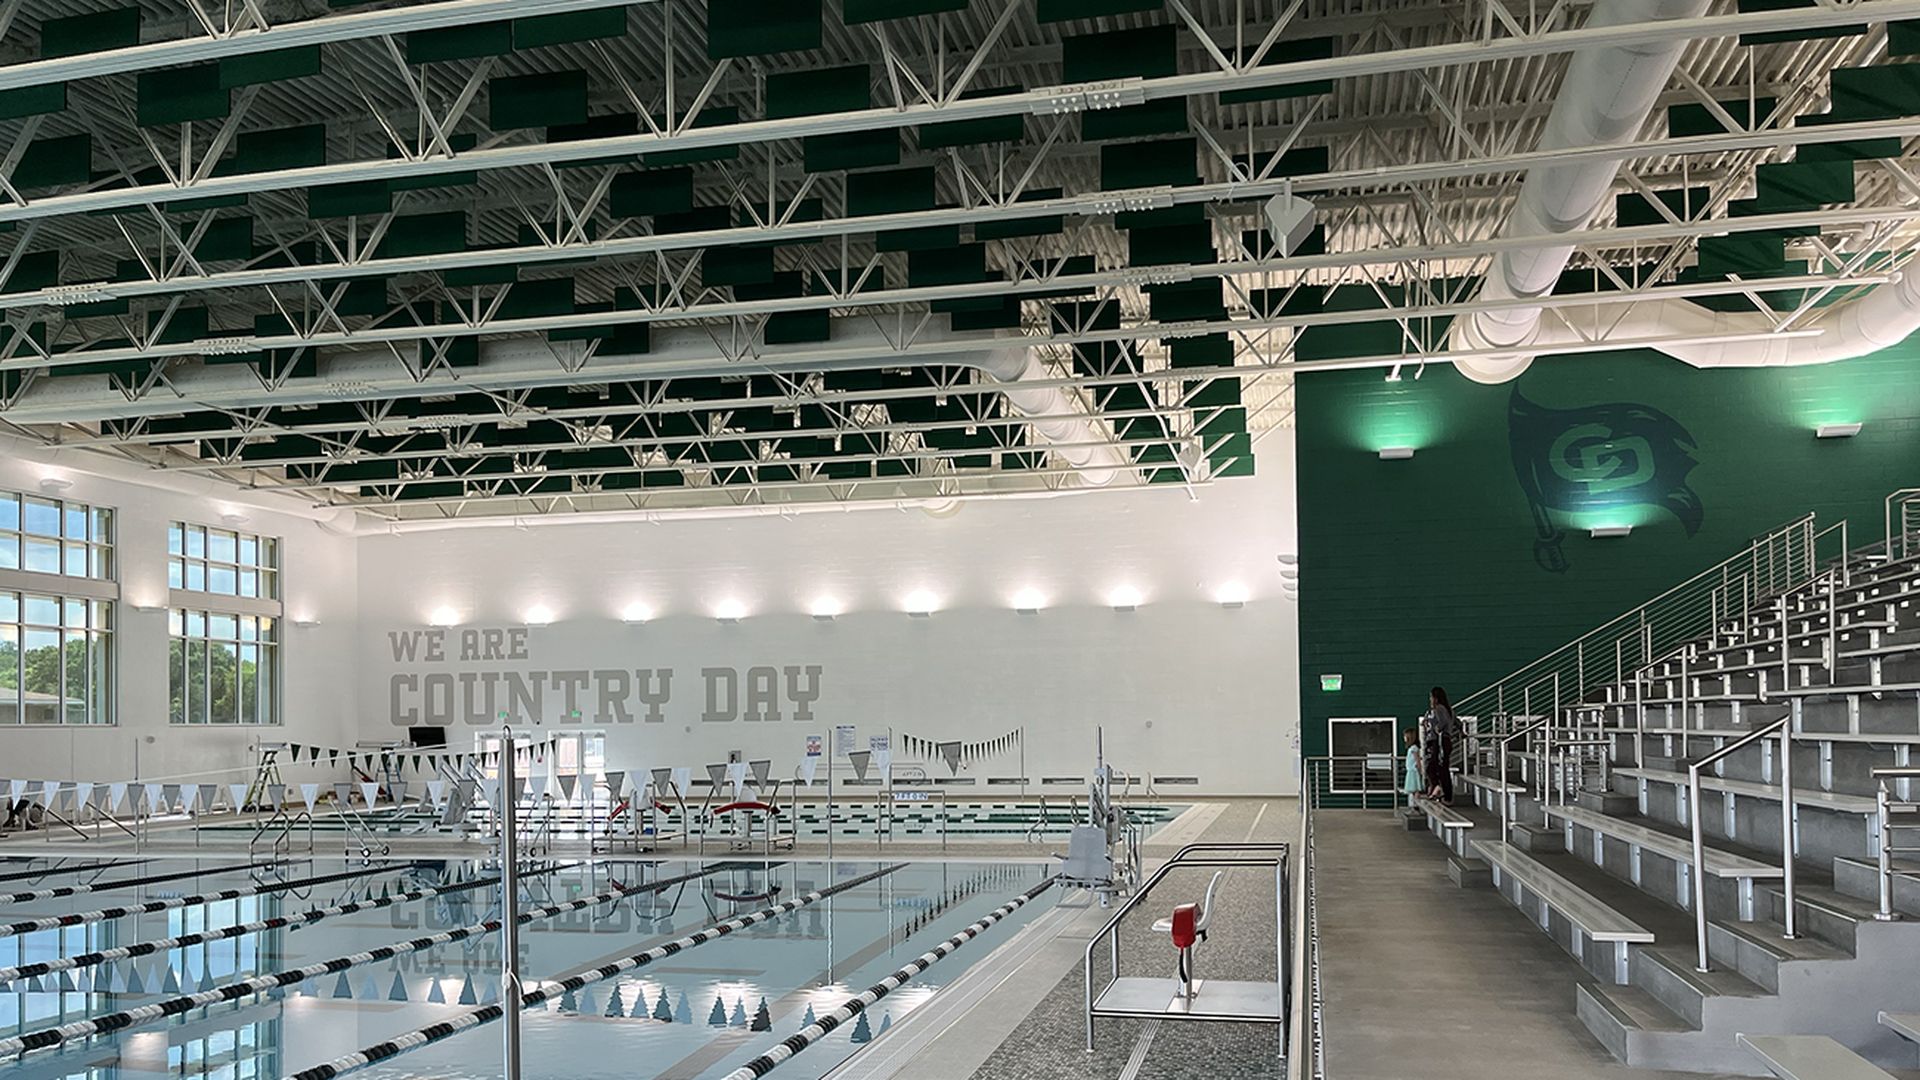 Sneak peek: Take a look inside Charlotte Country Day School's new